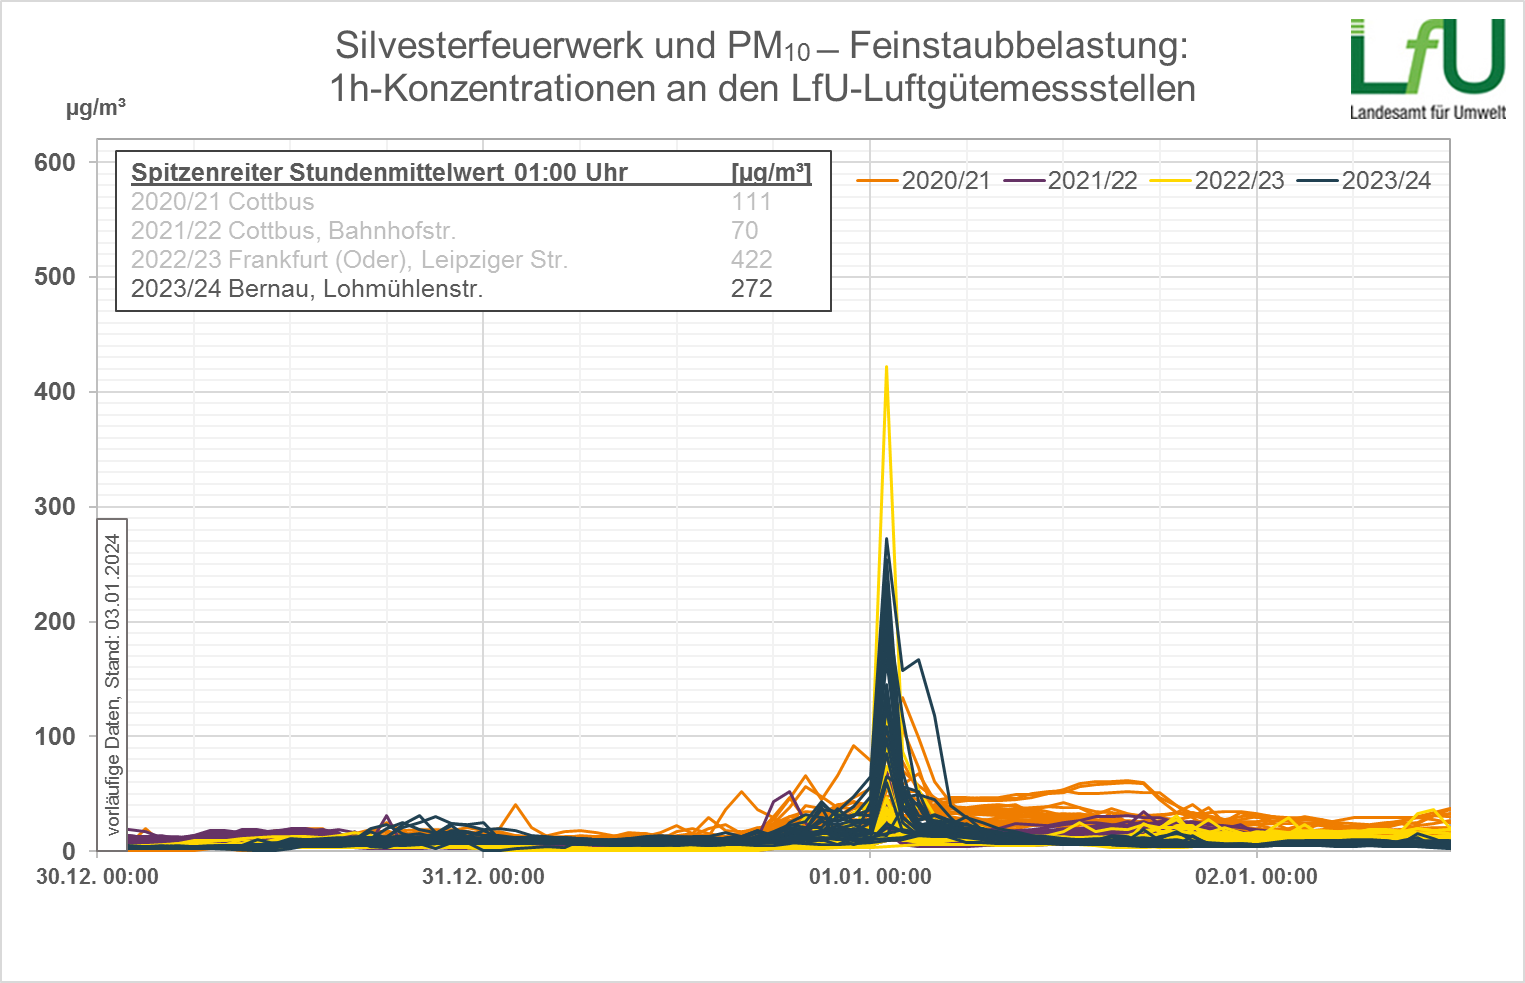 Die Grafik zeigt die Verläufe der Stundenmittelkonzentrationen des PM10 um die Silvesternacht. Abgebildet sind Kurvenscharen aller Messstellen für den aktuellen und die 3 letzten Jahreswechsel, farblich unterschieden je Jahr.